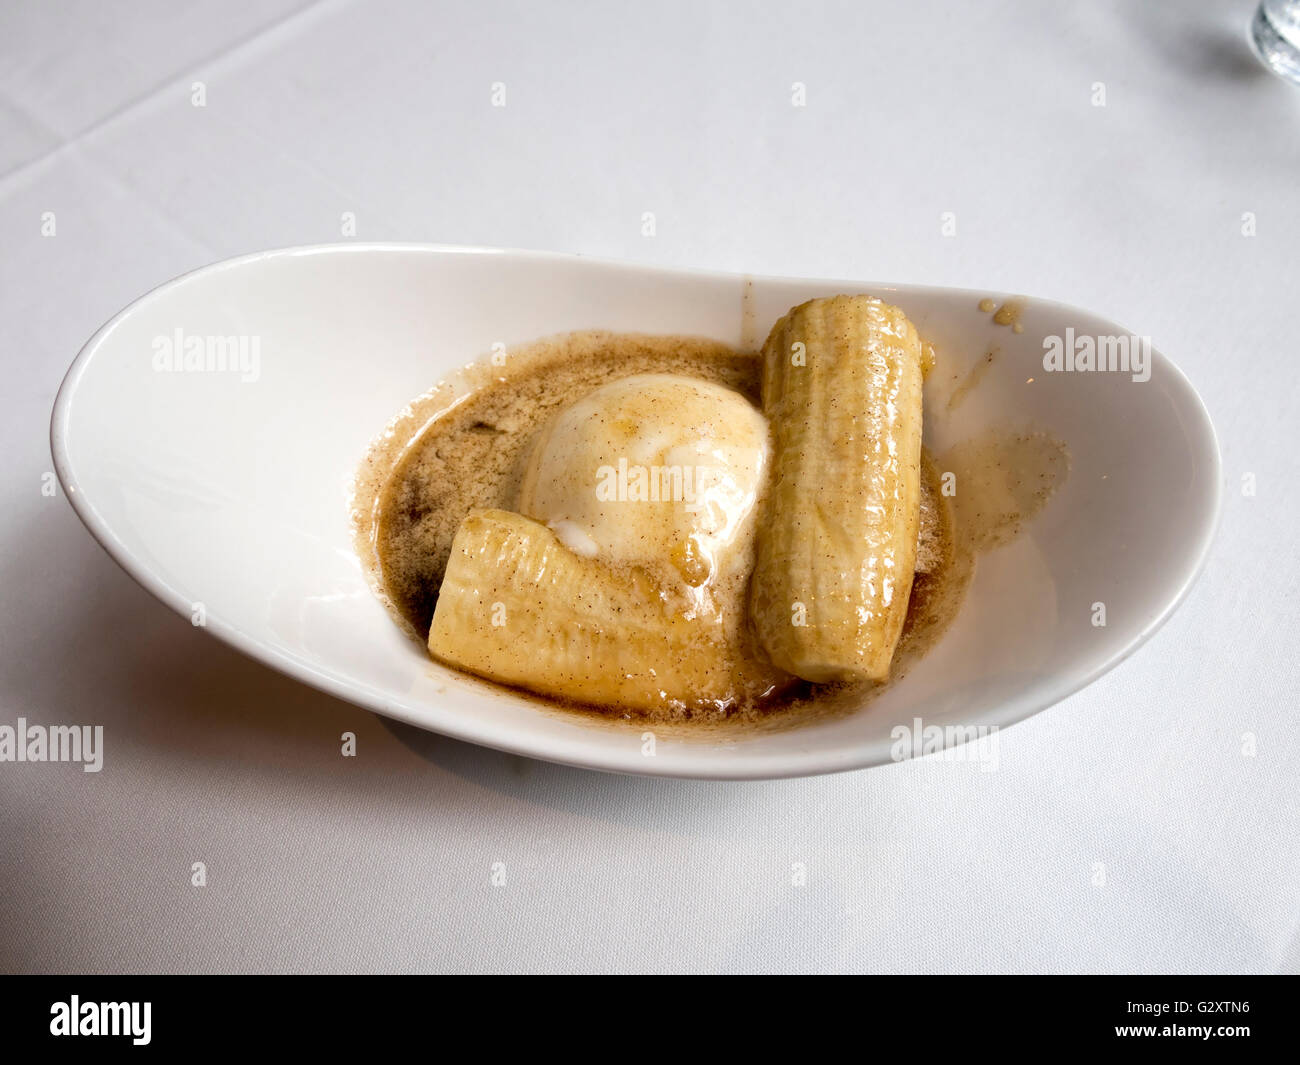 Bananas Foster en un manjar blanco Foto de stock